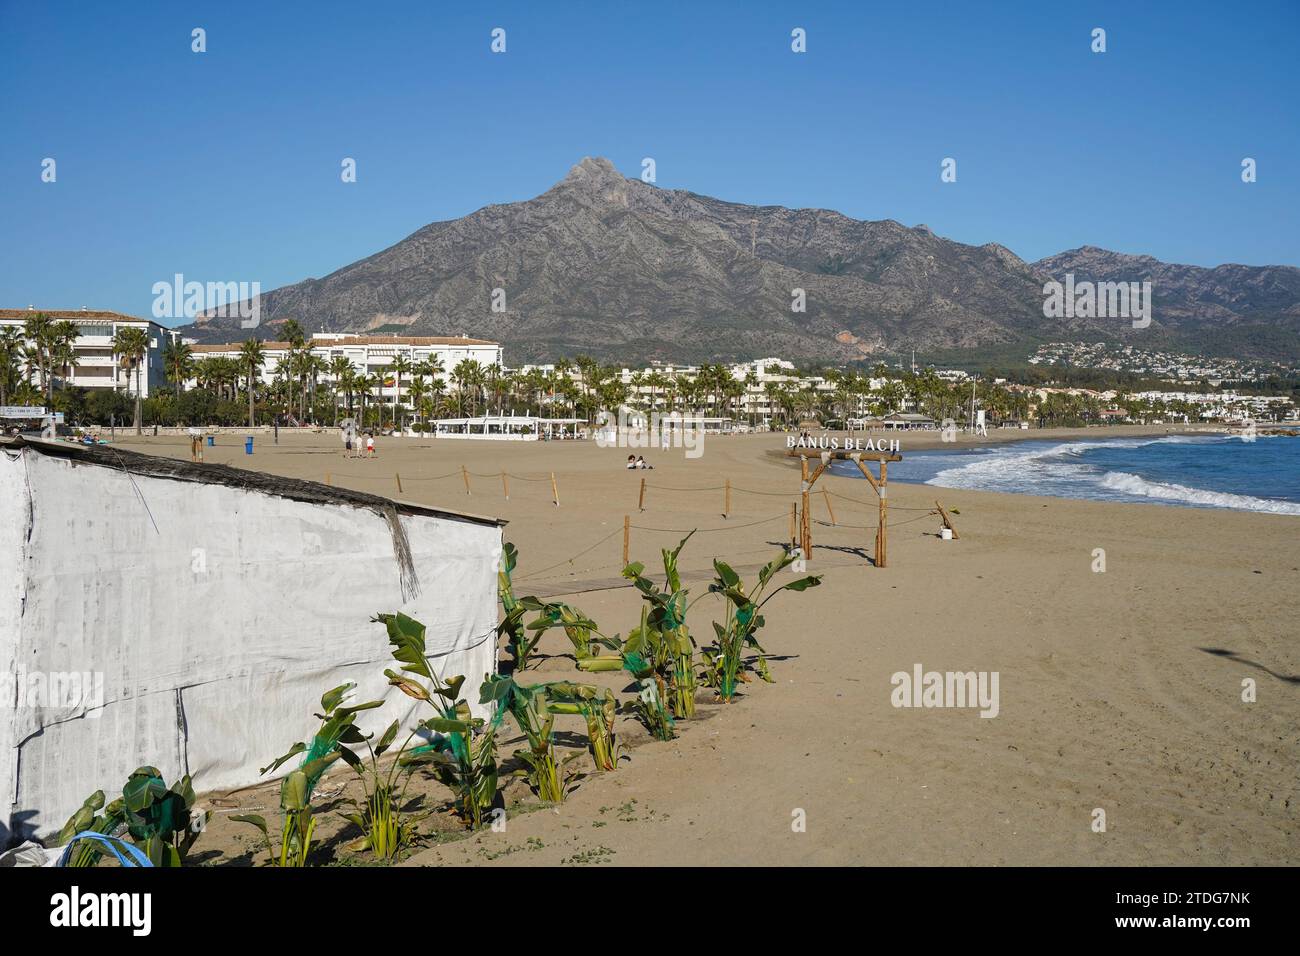 Plage de Puerto Banús, Marbella, avec la montagne de la Concha derrière, Costa del sol, saison d'hiver, Andalousie, Espagne. Banque D'Images